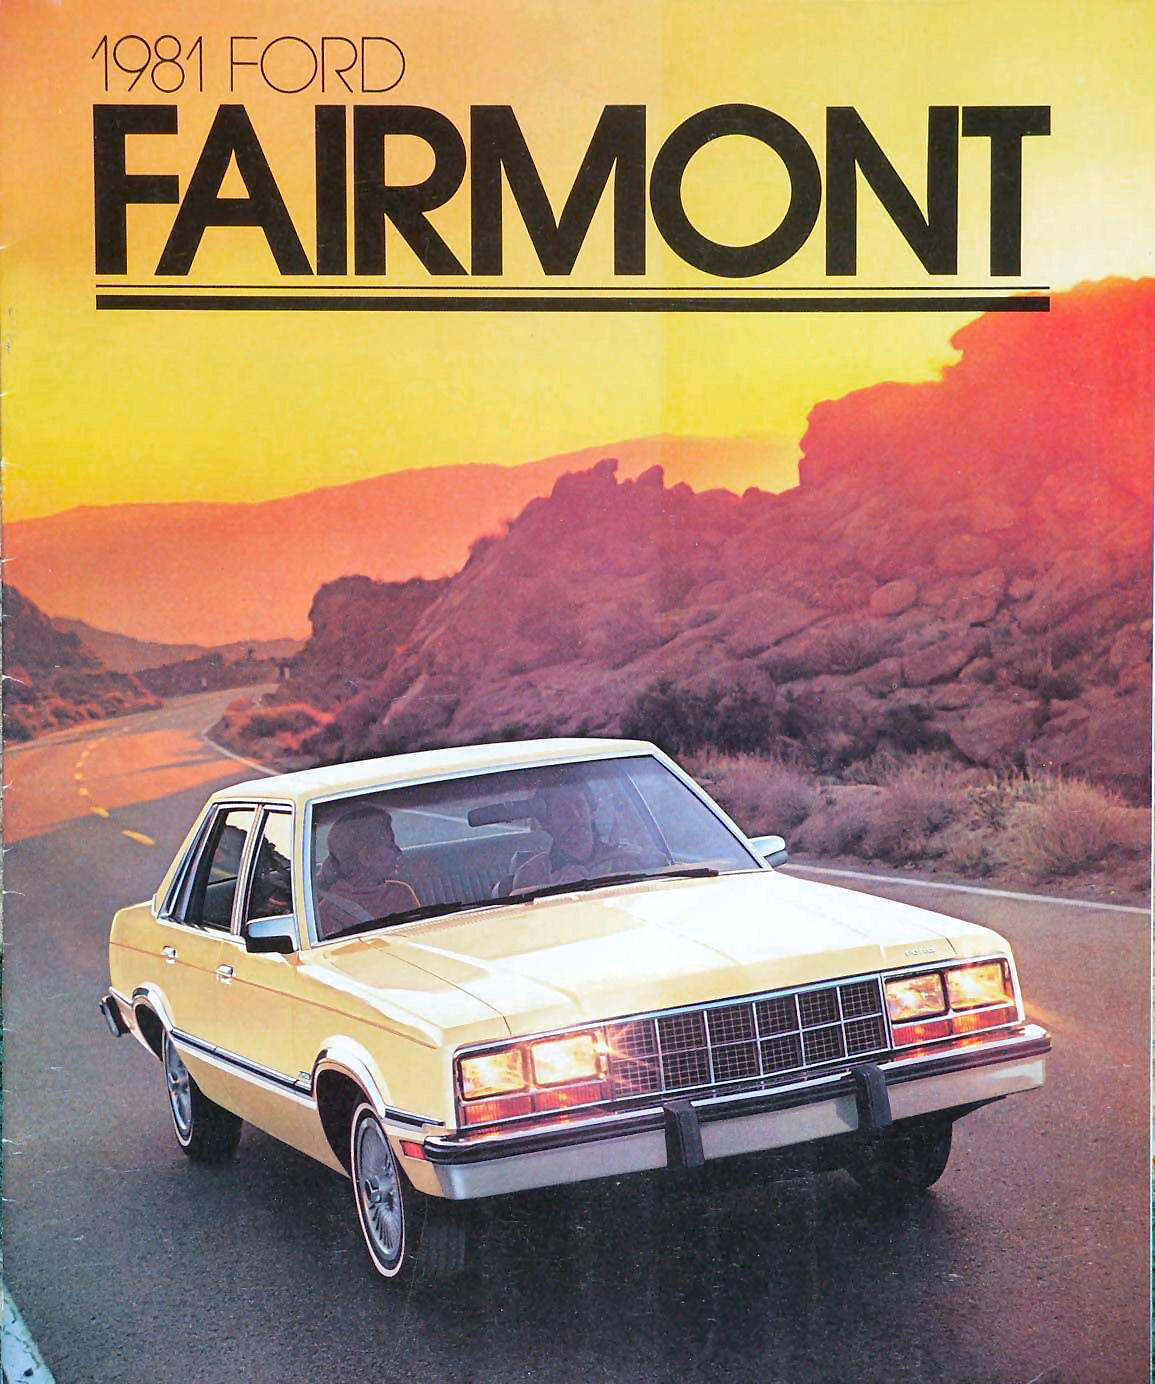 n_1981 Ford Fairmont-01.jpg